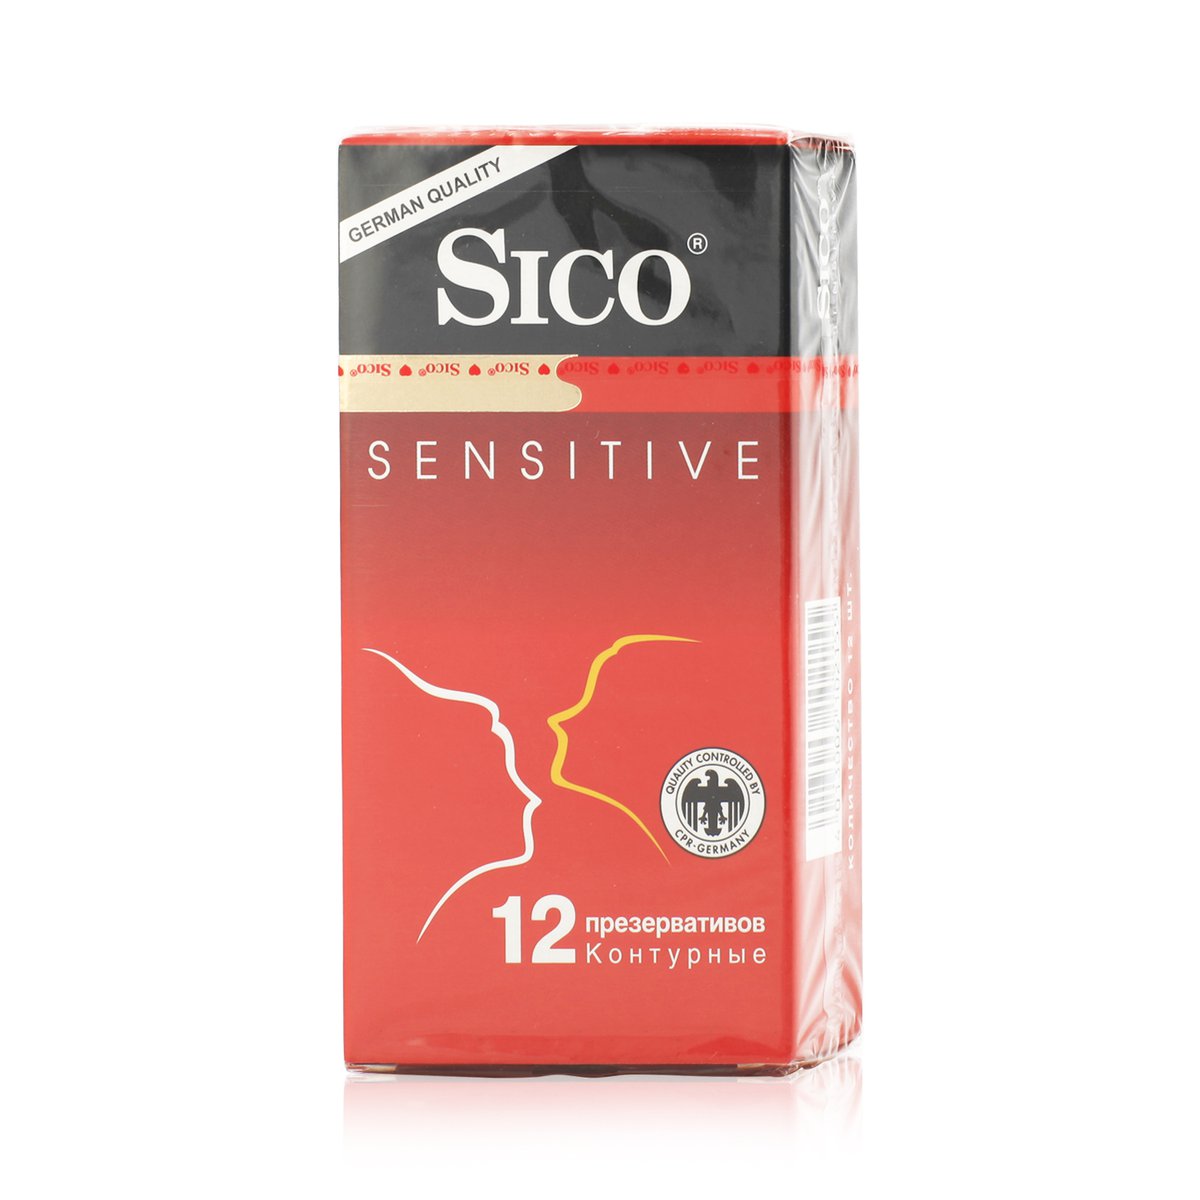 Сико презервативы сенсетив (презервативы, 12 шт) - цена, купить онлайн в Мо...